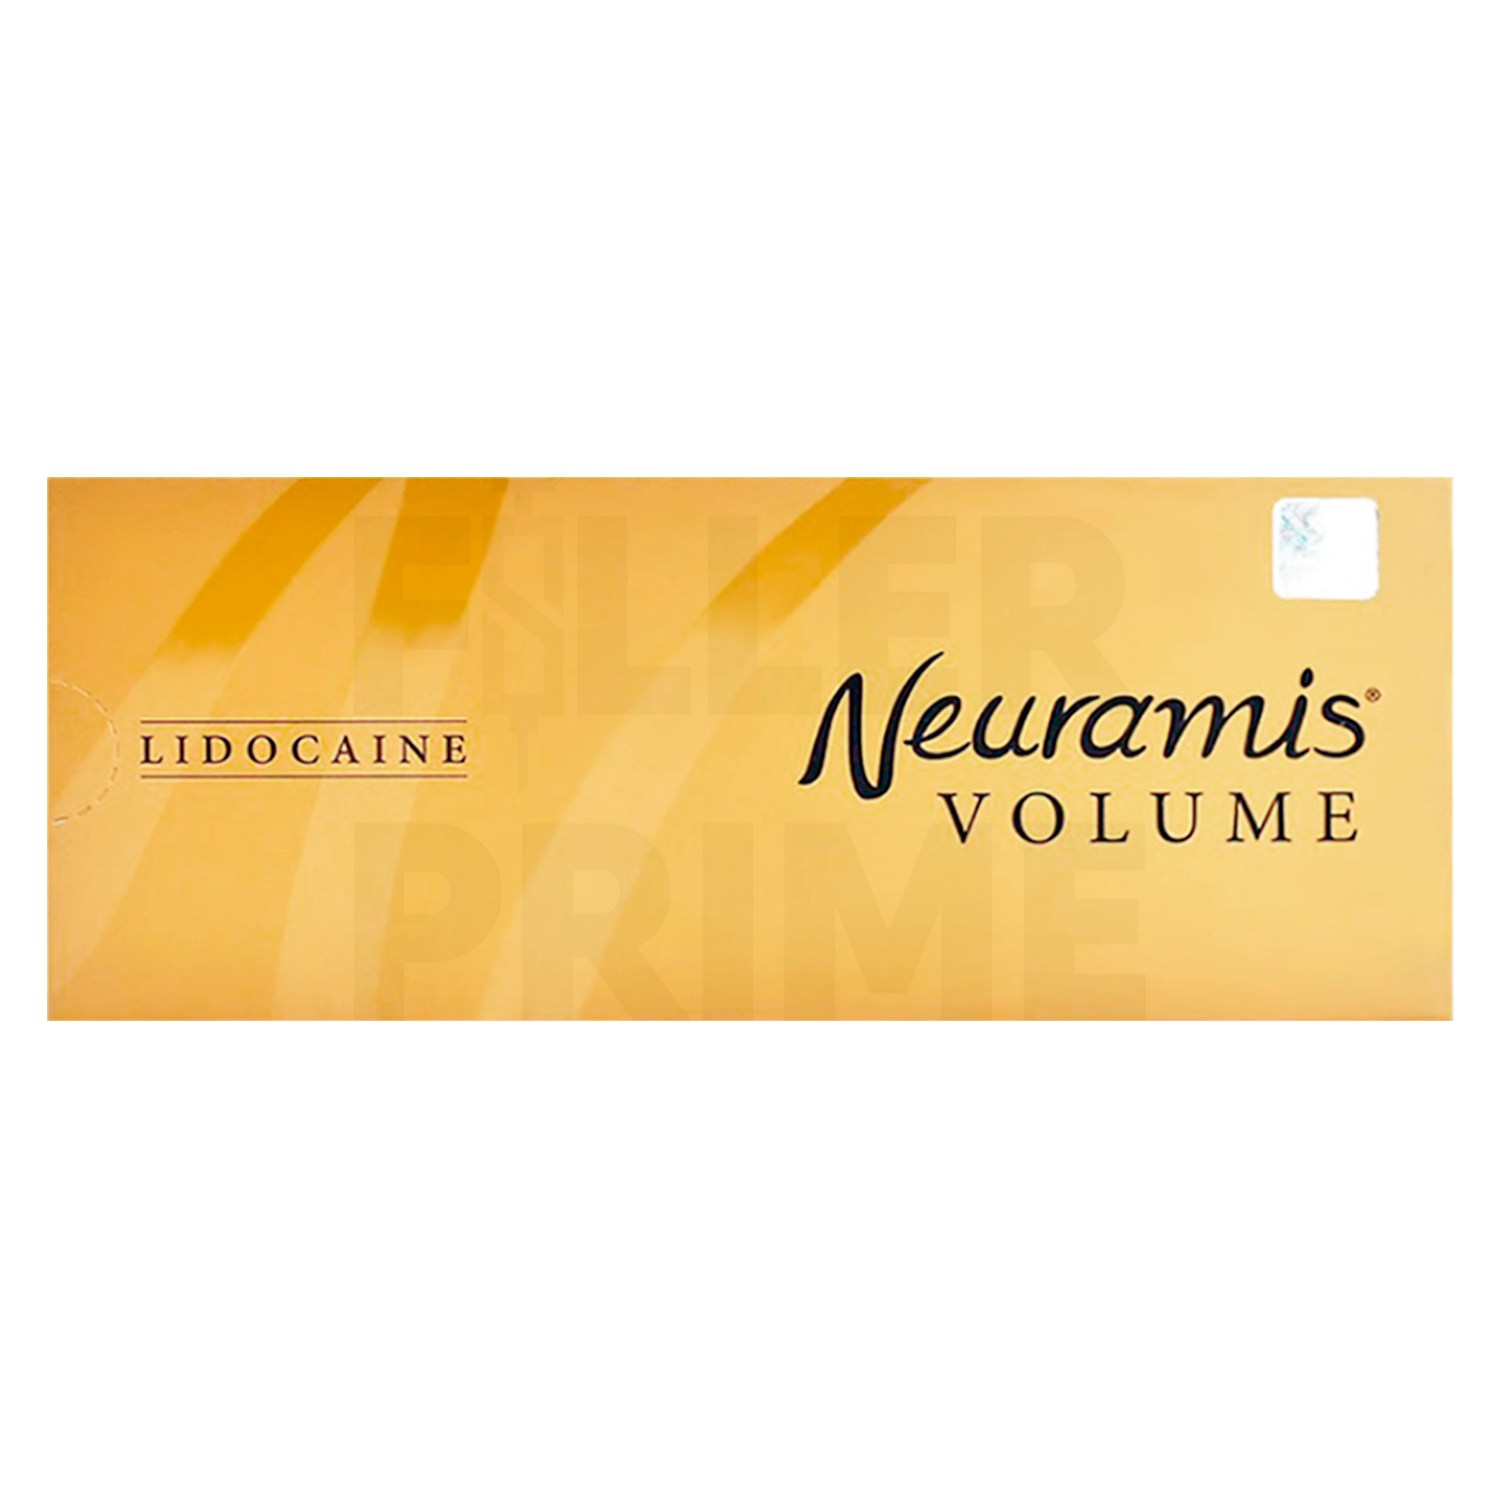 Ллер Neuramis Lidocaine. Филер nuramis Volum. Нейрамис Лайт филлер. Neuramis Volume Lidocaine.